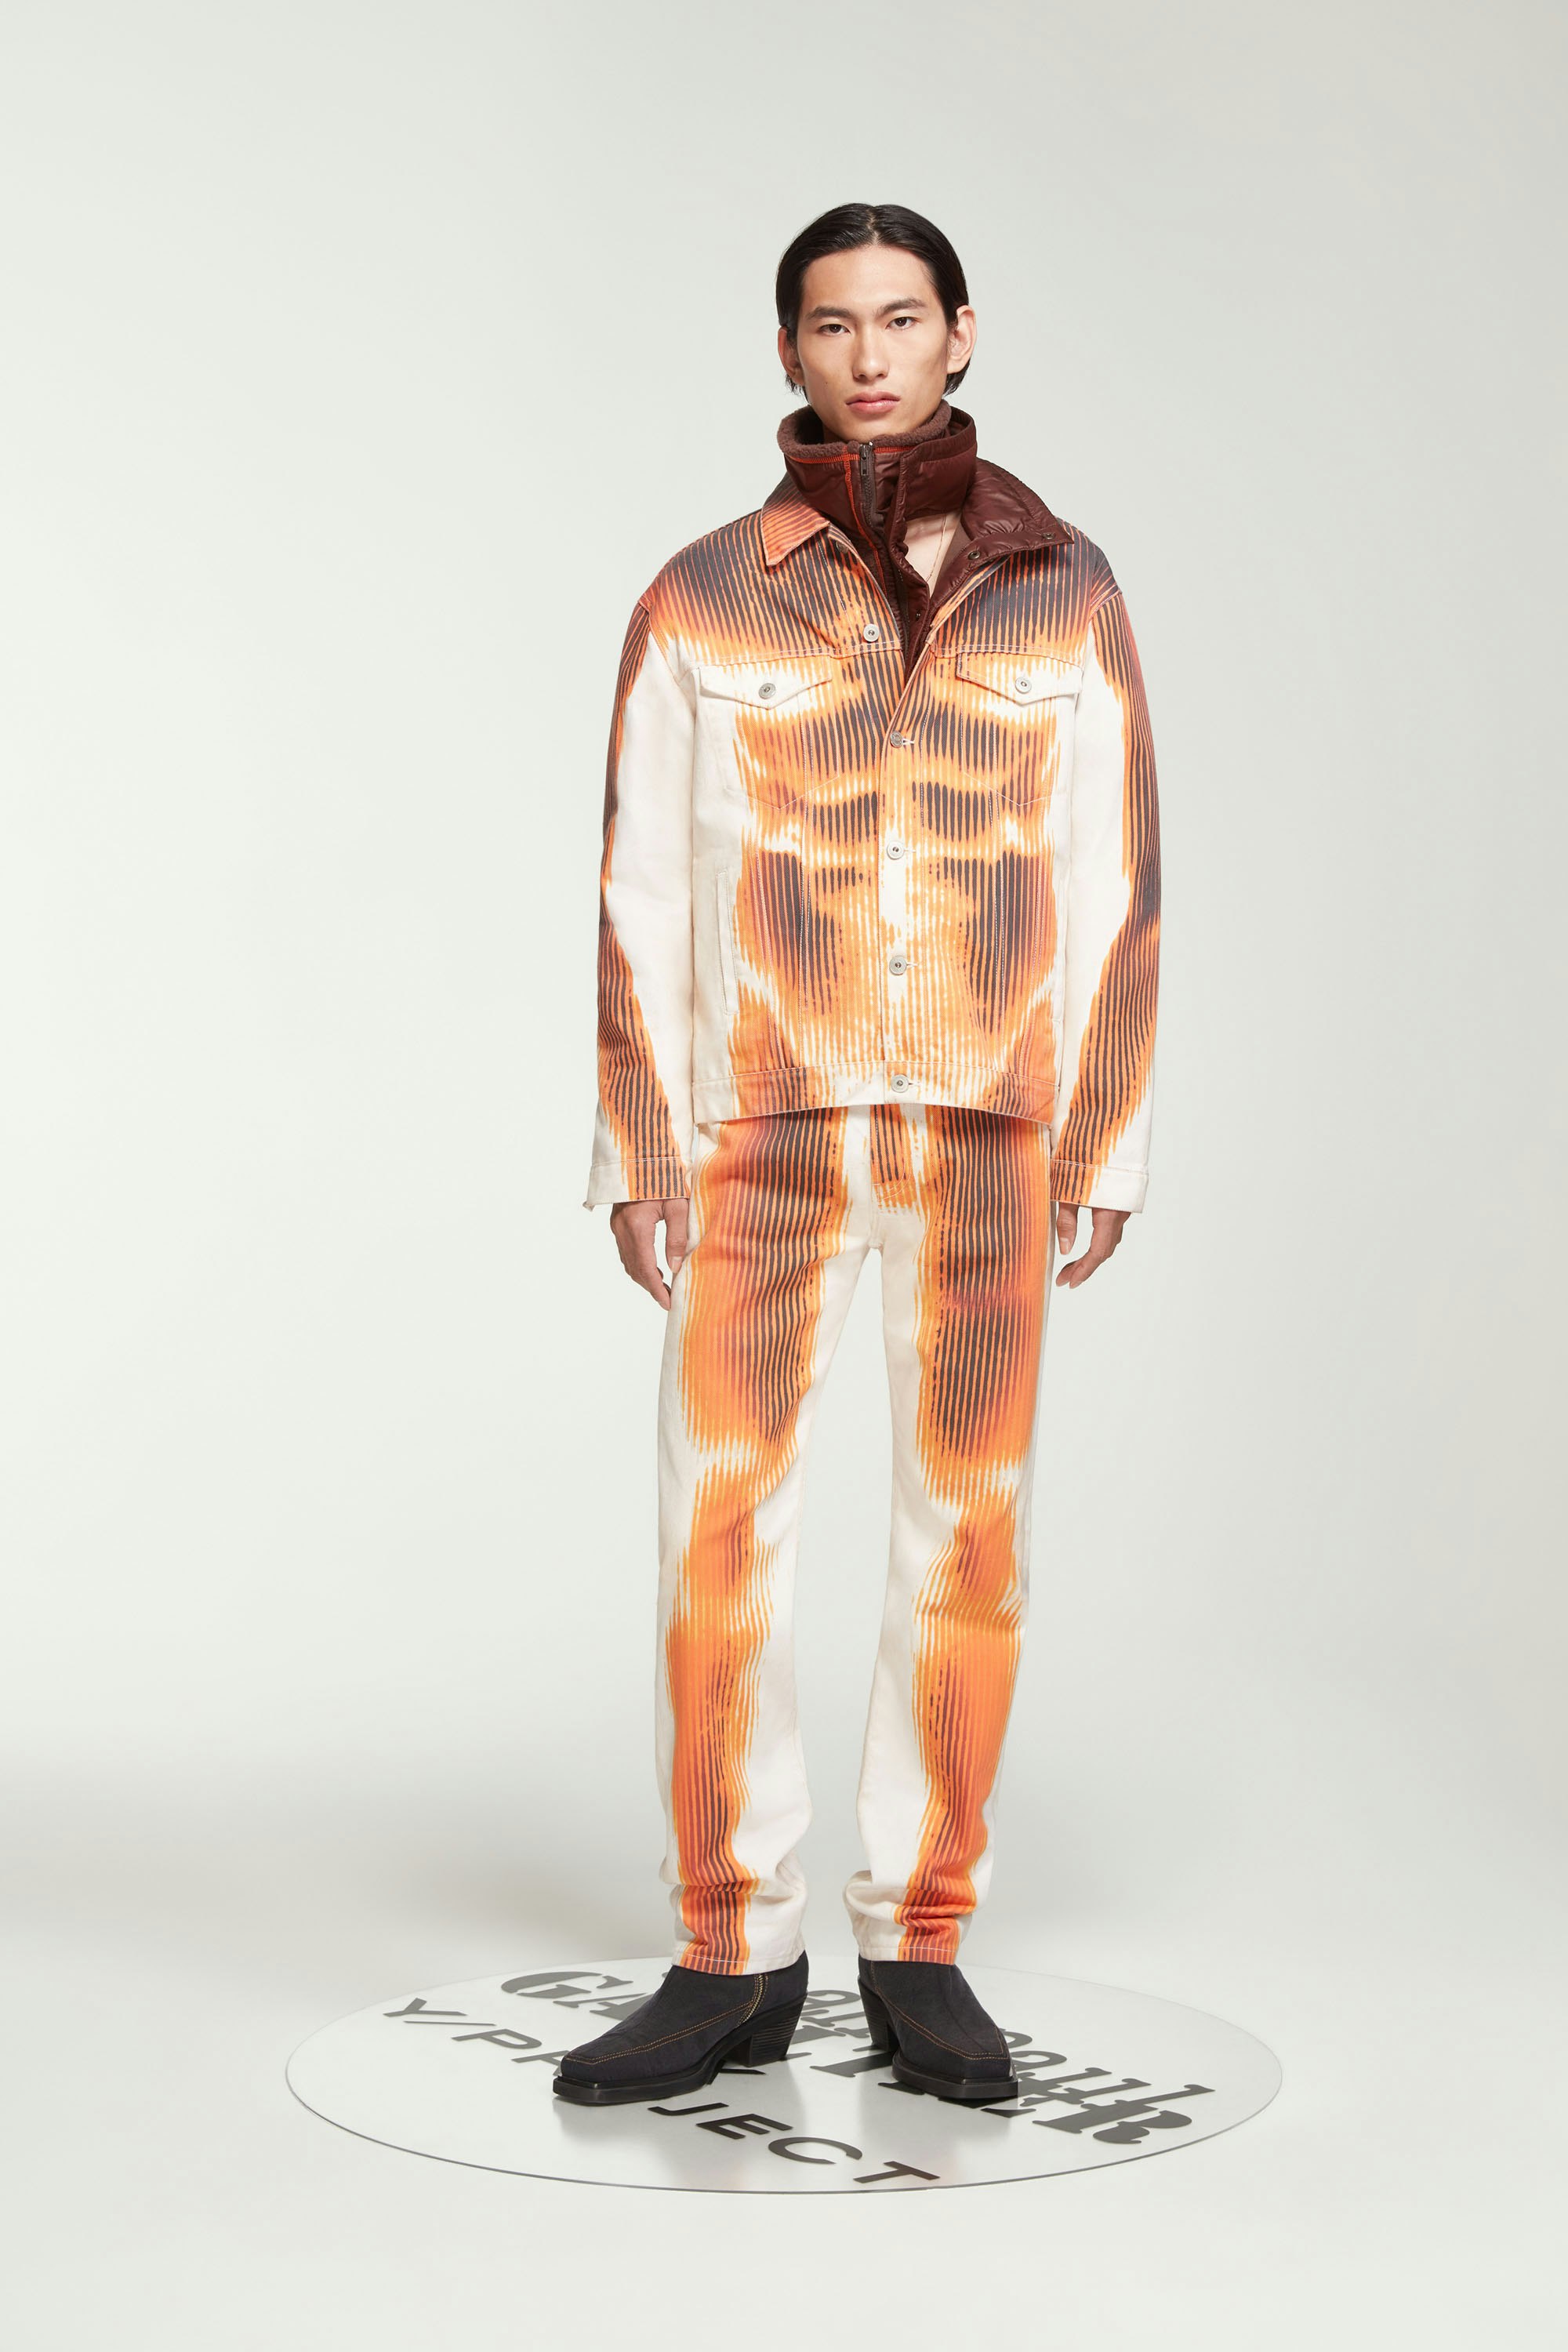 The White & Orange Body Morph Denim Jacket by Jean Paul Gaultier x Y/Project